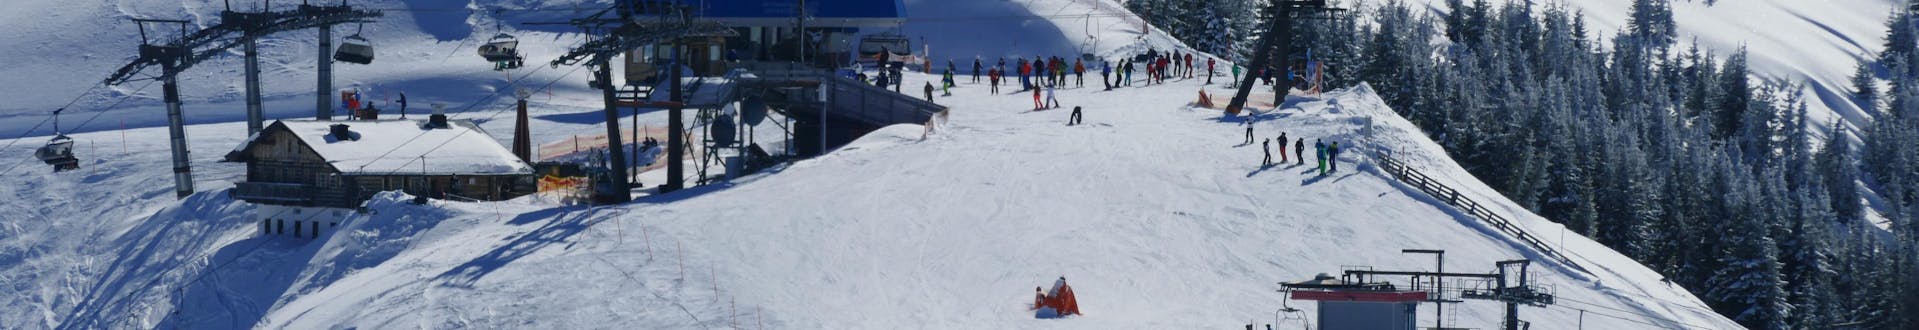 Erwachsene und Kinder beim Skifahren im Skigebiet Grossarl.